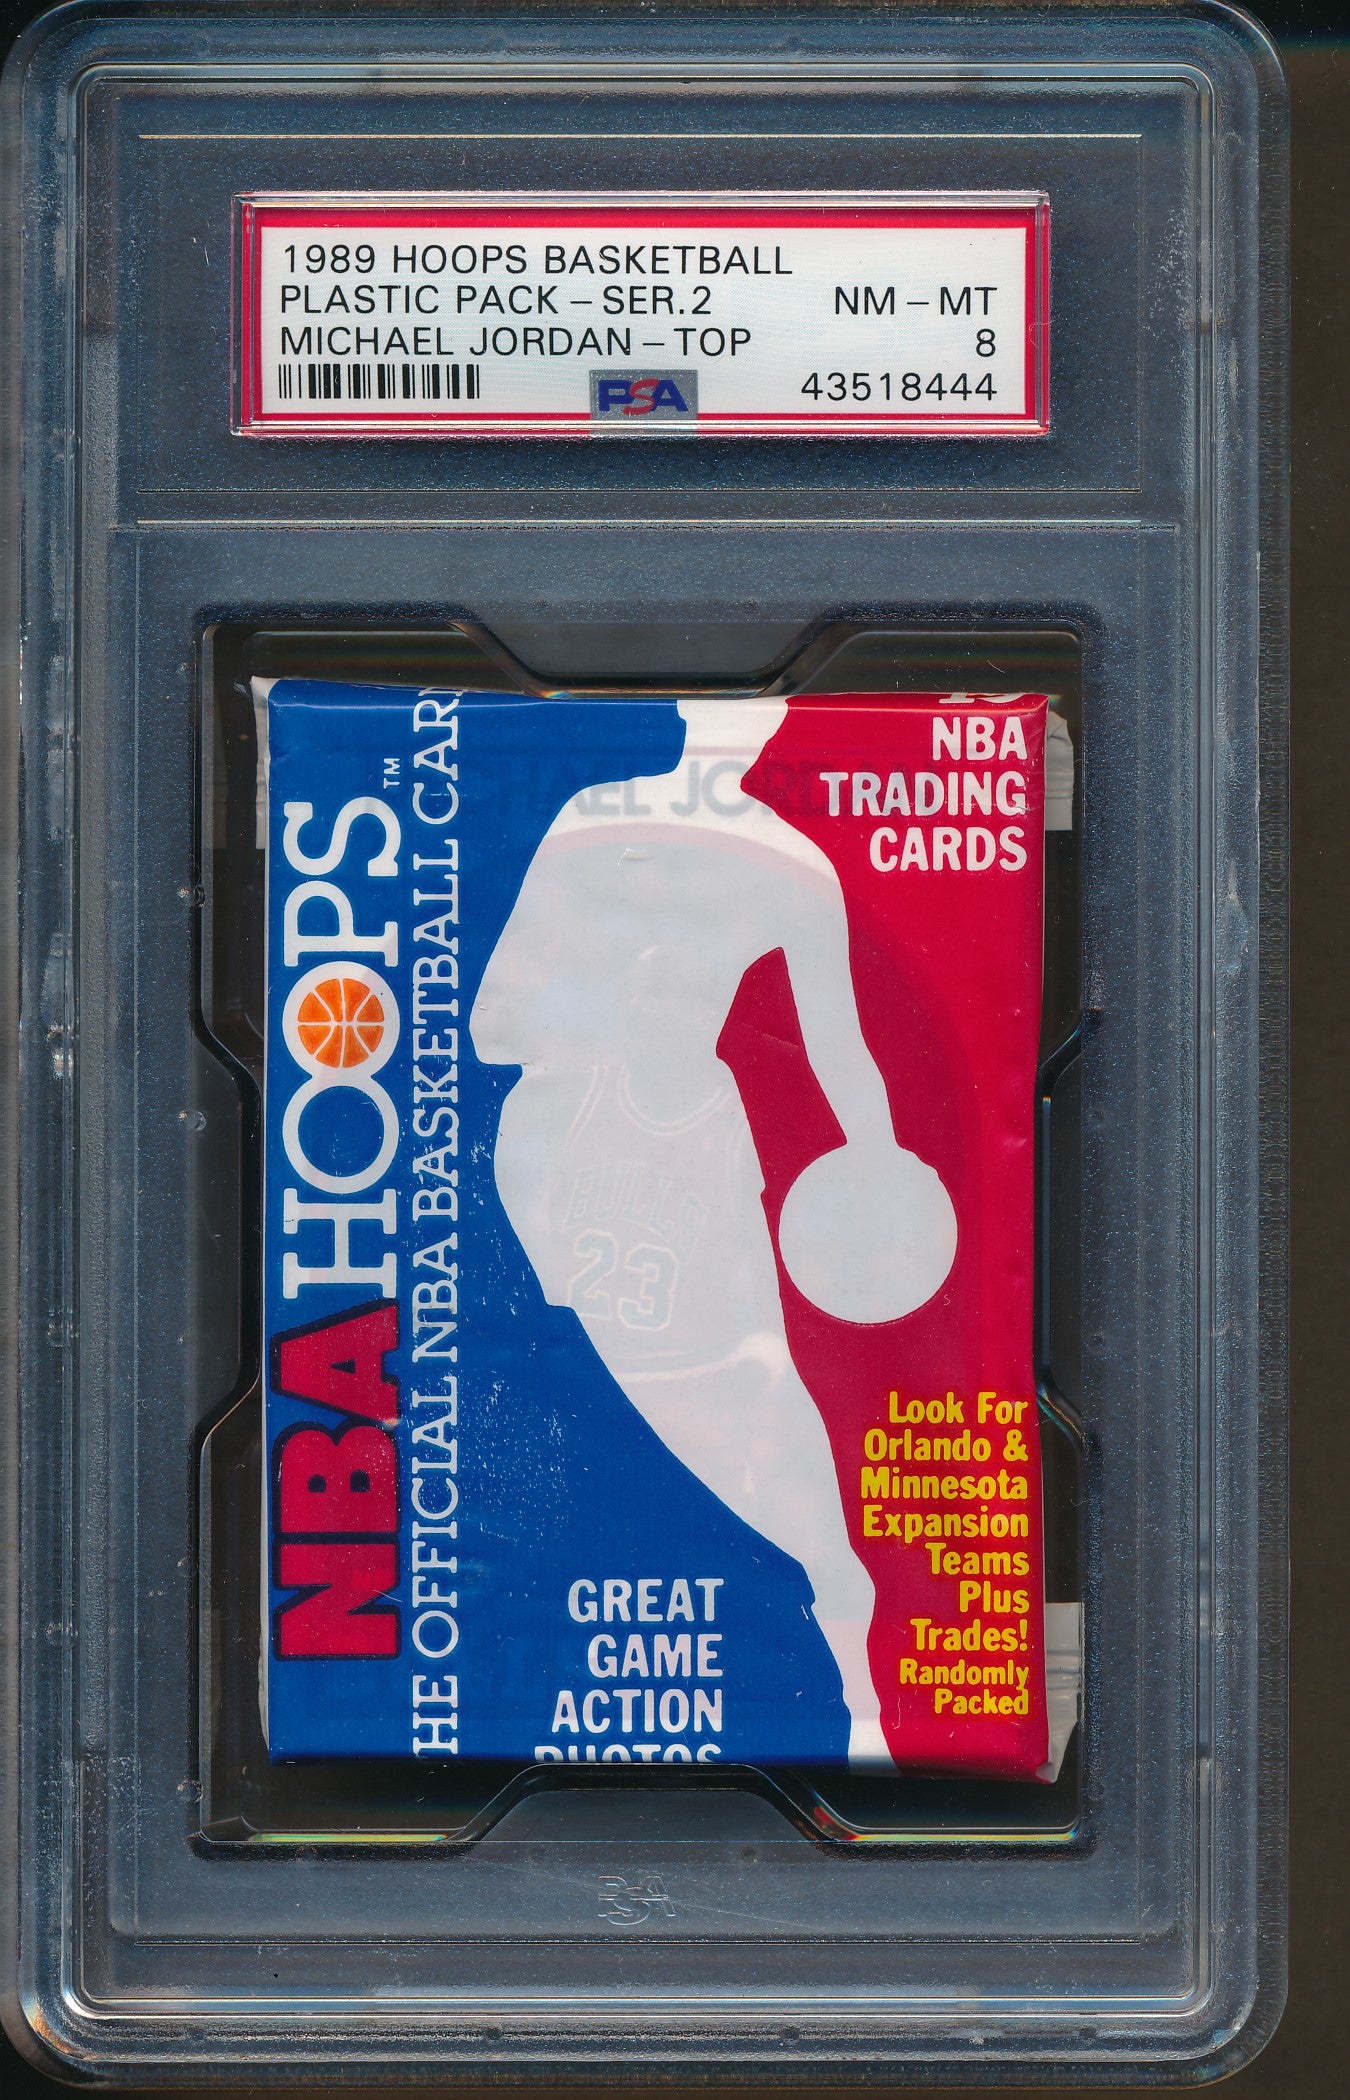 1989 Hoops Basketball Series 2 Pack PSA 8 w/ Jordan Top